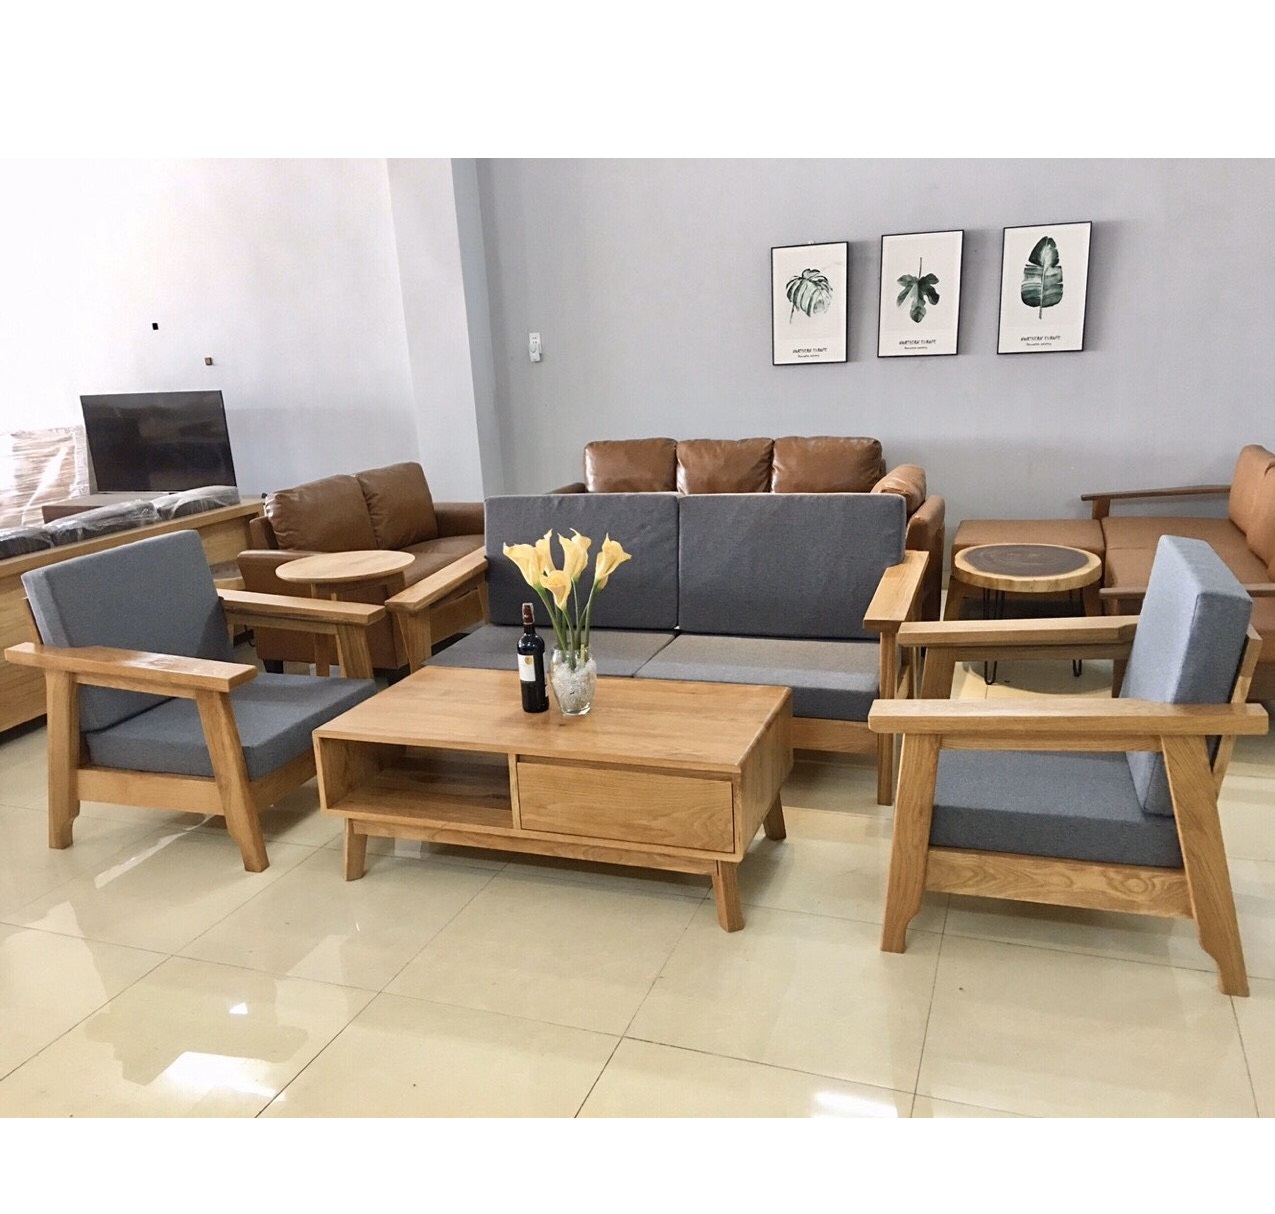 Bộ bàn ghế phòng khách gỗ sồi Mỹ: Với thiết kế hiện đại và chất liệu gỗ sồi Mỹ cao cấp, bộ bàn ghế này sẽ là điểm nhấn tuyệt vời cho không gian phòng khách của bạn. Đến năm 2024, thiết kế nội thất gỗ tự nhiên sẽ trở thành xu hướng phổ biến và bộ bàn ghế phòng khách gỗ sồi Mỹ sẽ là lựa chọn hoàn hảo cho những ai yêu thích sự sang trọng và tinh tế.

Bộ Bàn Ghế Sofa Đối Phòng Khách Gỗ Sồi Nga Màu Óc Chó: Với sự hoàn hảo trong từng chi tiết và màu sắc tinh tế, bộ bàn ghế sofa này sẽ mang lại cho bạn cảm giác ấm áp và sang trọng trong căn phòng khách của mình. Với xu hướng thiết kế nội thất trong tương lai, bộ bàn ghế sofa đối phòng khách gỗ sồi Nga màu Óc Chó sẽ là điểm nhấn và tạo nên sự khác biệt cho không gian của bạn.

Bàn Ghế Gỗ Sồi: Với sự ấm cúng và tinh tế của gỗ sồi, bàn ghế gỗ sồi sẽ mang lại cho không gian phòng khách của bạn một cảm giác gần gũi và sang trọng. Năm 2024, với xu hướng thiết kế nội thất theo phong cách hiện đại, bàn ghế gỗ sồi sẽ là lựa chọn hoàn hảo và trở thành một phần không thể thiếu trong các thiết kế nội thất.

Bộ Bàn Ghế Sofa Gỗ Sồi Nga Chạm Trống Đồng: Với sự kết hợp hoàn hảo giữa gỗ sồi Nga và chạm trống đồng, bộ bàn ghế sofa này sẽ mang lại cho không gian phòng khách của bạn một sự sang trọng và đẳng cấp. Với xu hướng thiết kế nội thất theo phong cách cổ điển, bộ bàn ghế sofa gỗ sồi Nga chạm trống đồng sẽ tạo nên sự khác biệt cho thiết kế nội thất của bạn.

Nội thất phòng khách chung cư gỗ sồi tự nhiên: Nội thất phòng khách chung cư gỗ sồi tự nhiên sẽ mang lại cho không gian bạn cảm giác ấm cúng và tươi mới. Với xu hướng thiết kế nội thất sử dụng chất liệu gỗ tự nhiên, nội thất phòng khách chung cư gỗ sồi tự nhiên trở thành lựa chọn hàng đầu cho những ai yêu thích sự giản dị và gần gũi với thiên nhiên.